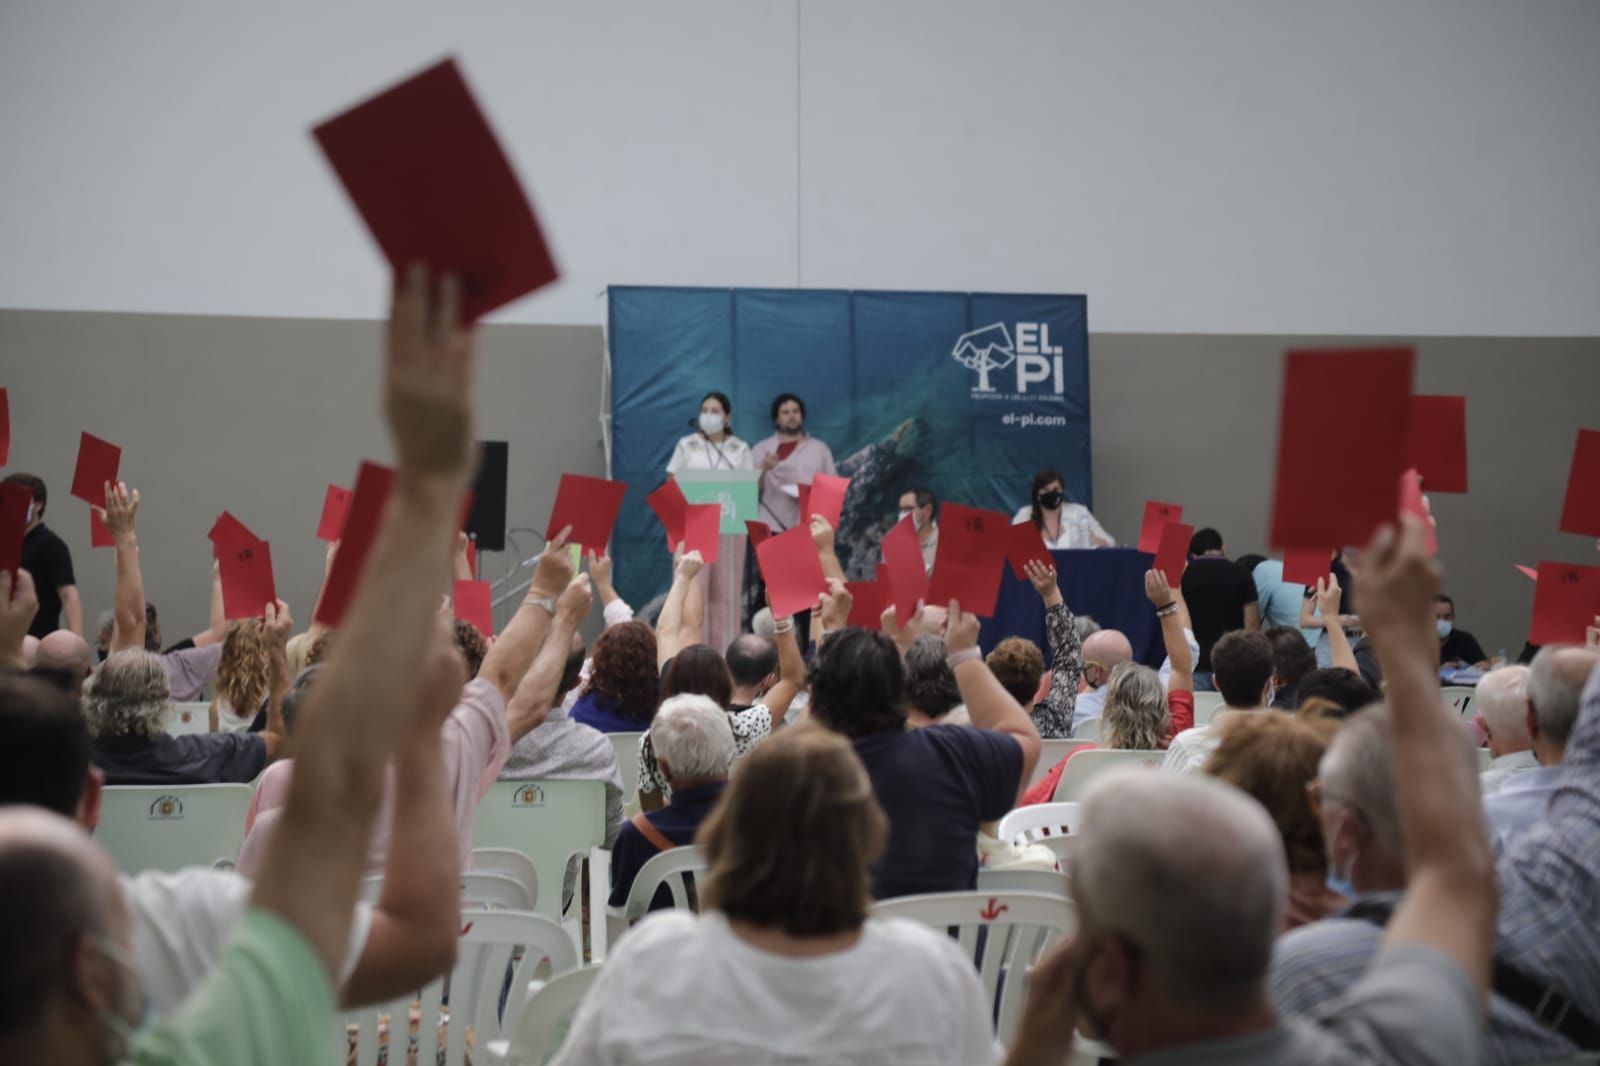 El 'melianista' Tolo Gili gana el congreso de El Pi con el 56,7% de los votos